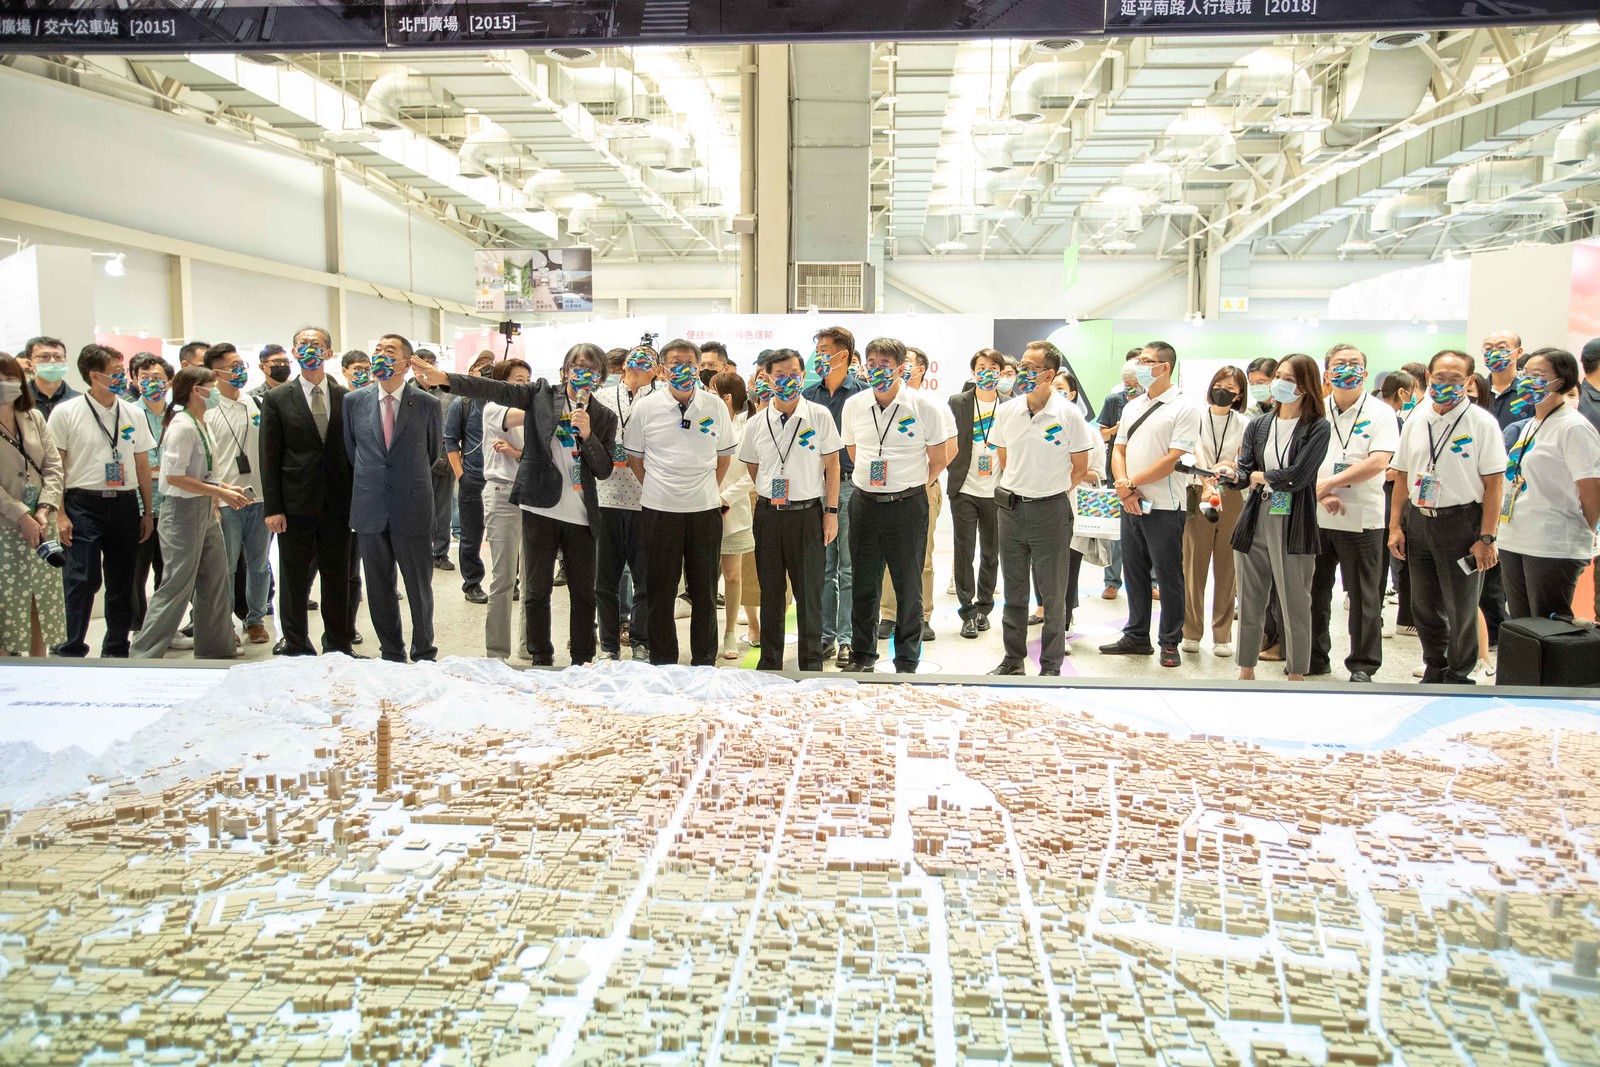 策展人龔書章介紹《2022台北城市博覽會》